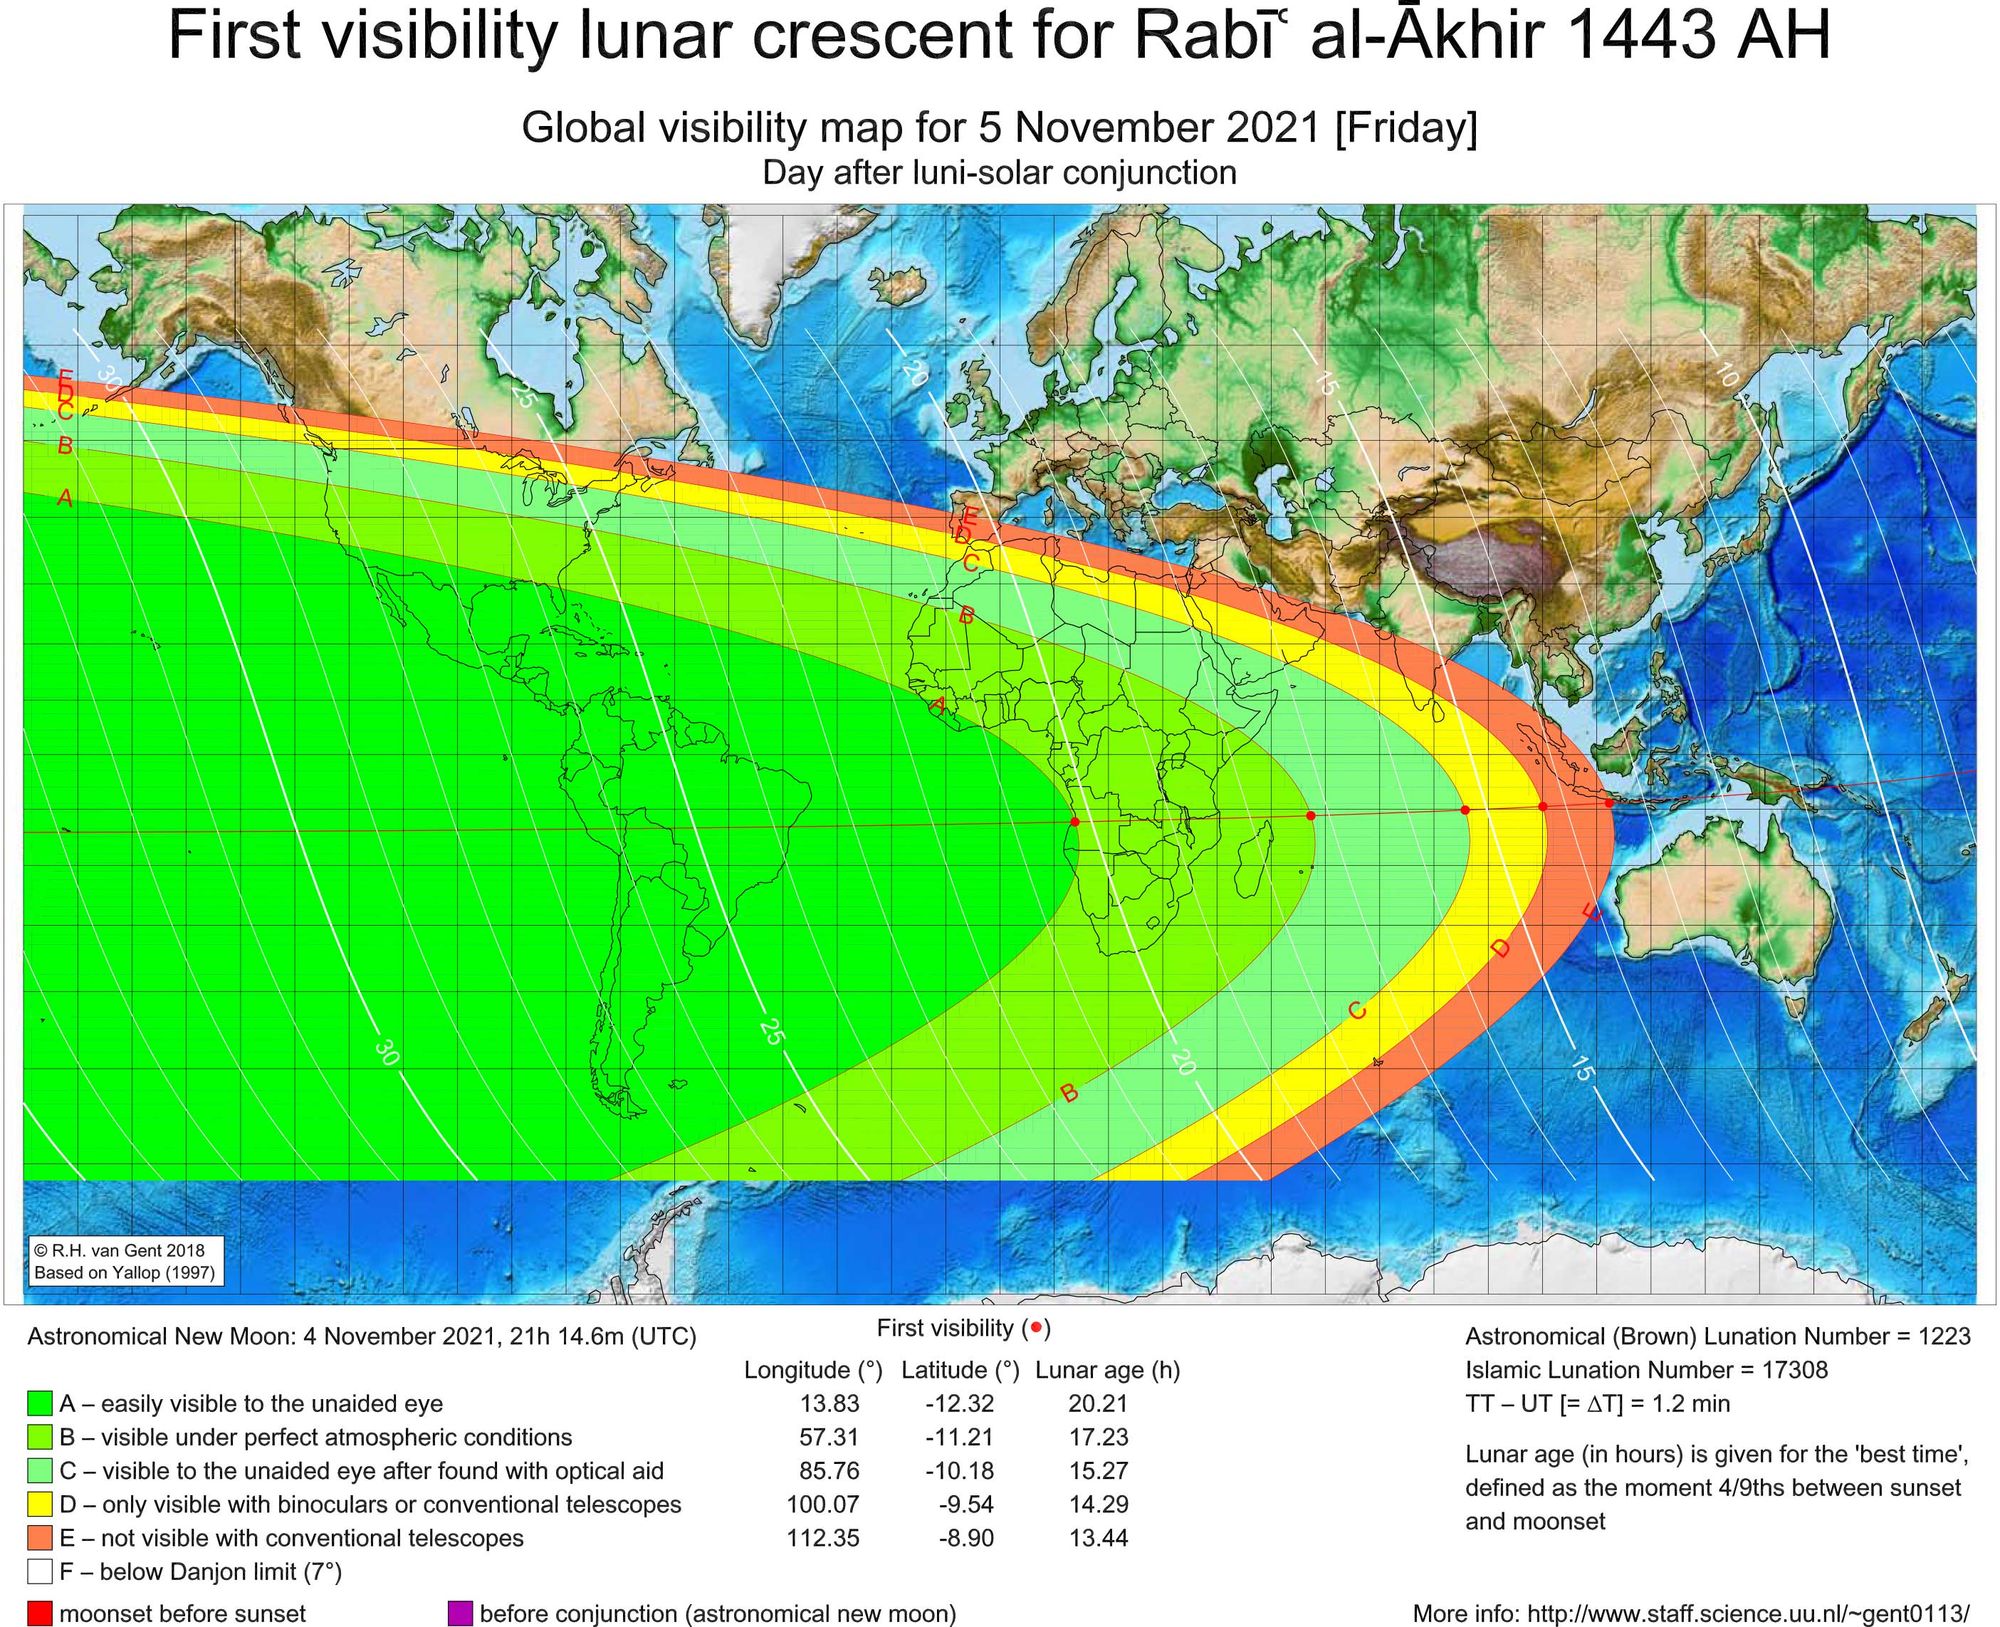 การสังเกตจันทร์เสี้ยวแรก (ฮีลาล) เพื่อกำหนดเดือนรอบีอุล อาเคร (Rabiul Akhir) ฮ.ศ.1443